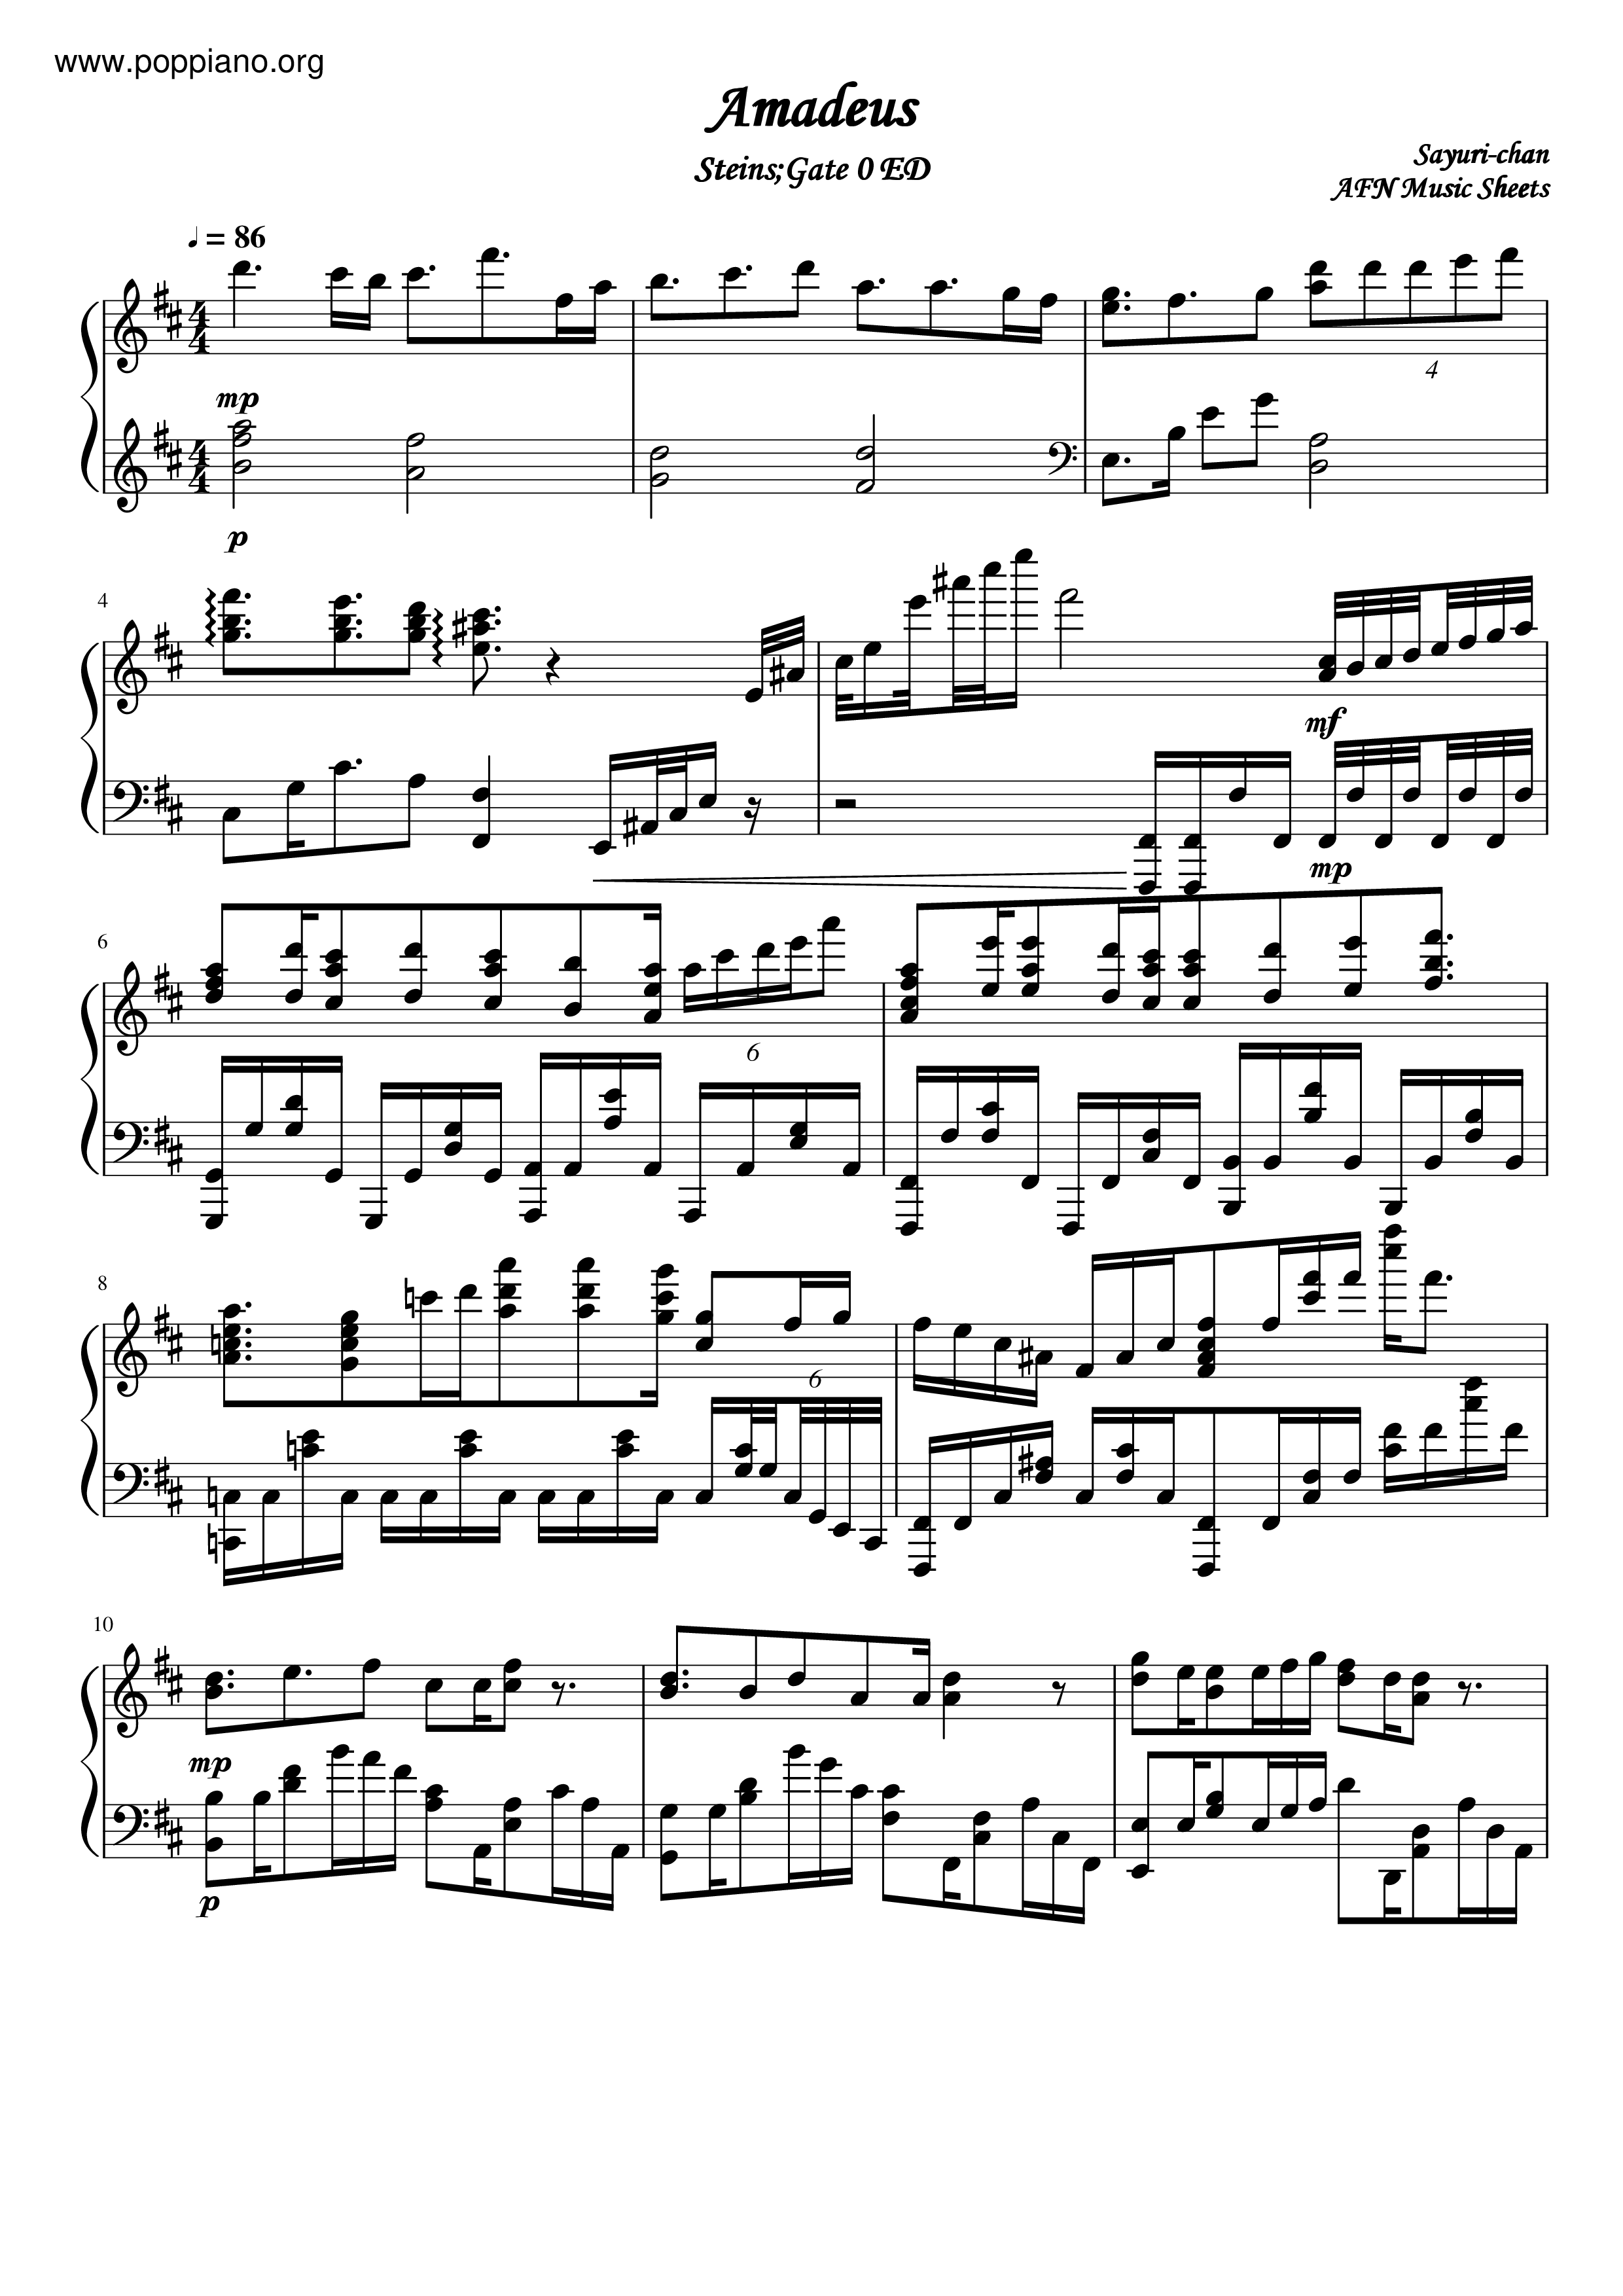 Steins;Gate - Amadeus Score